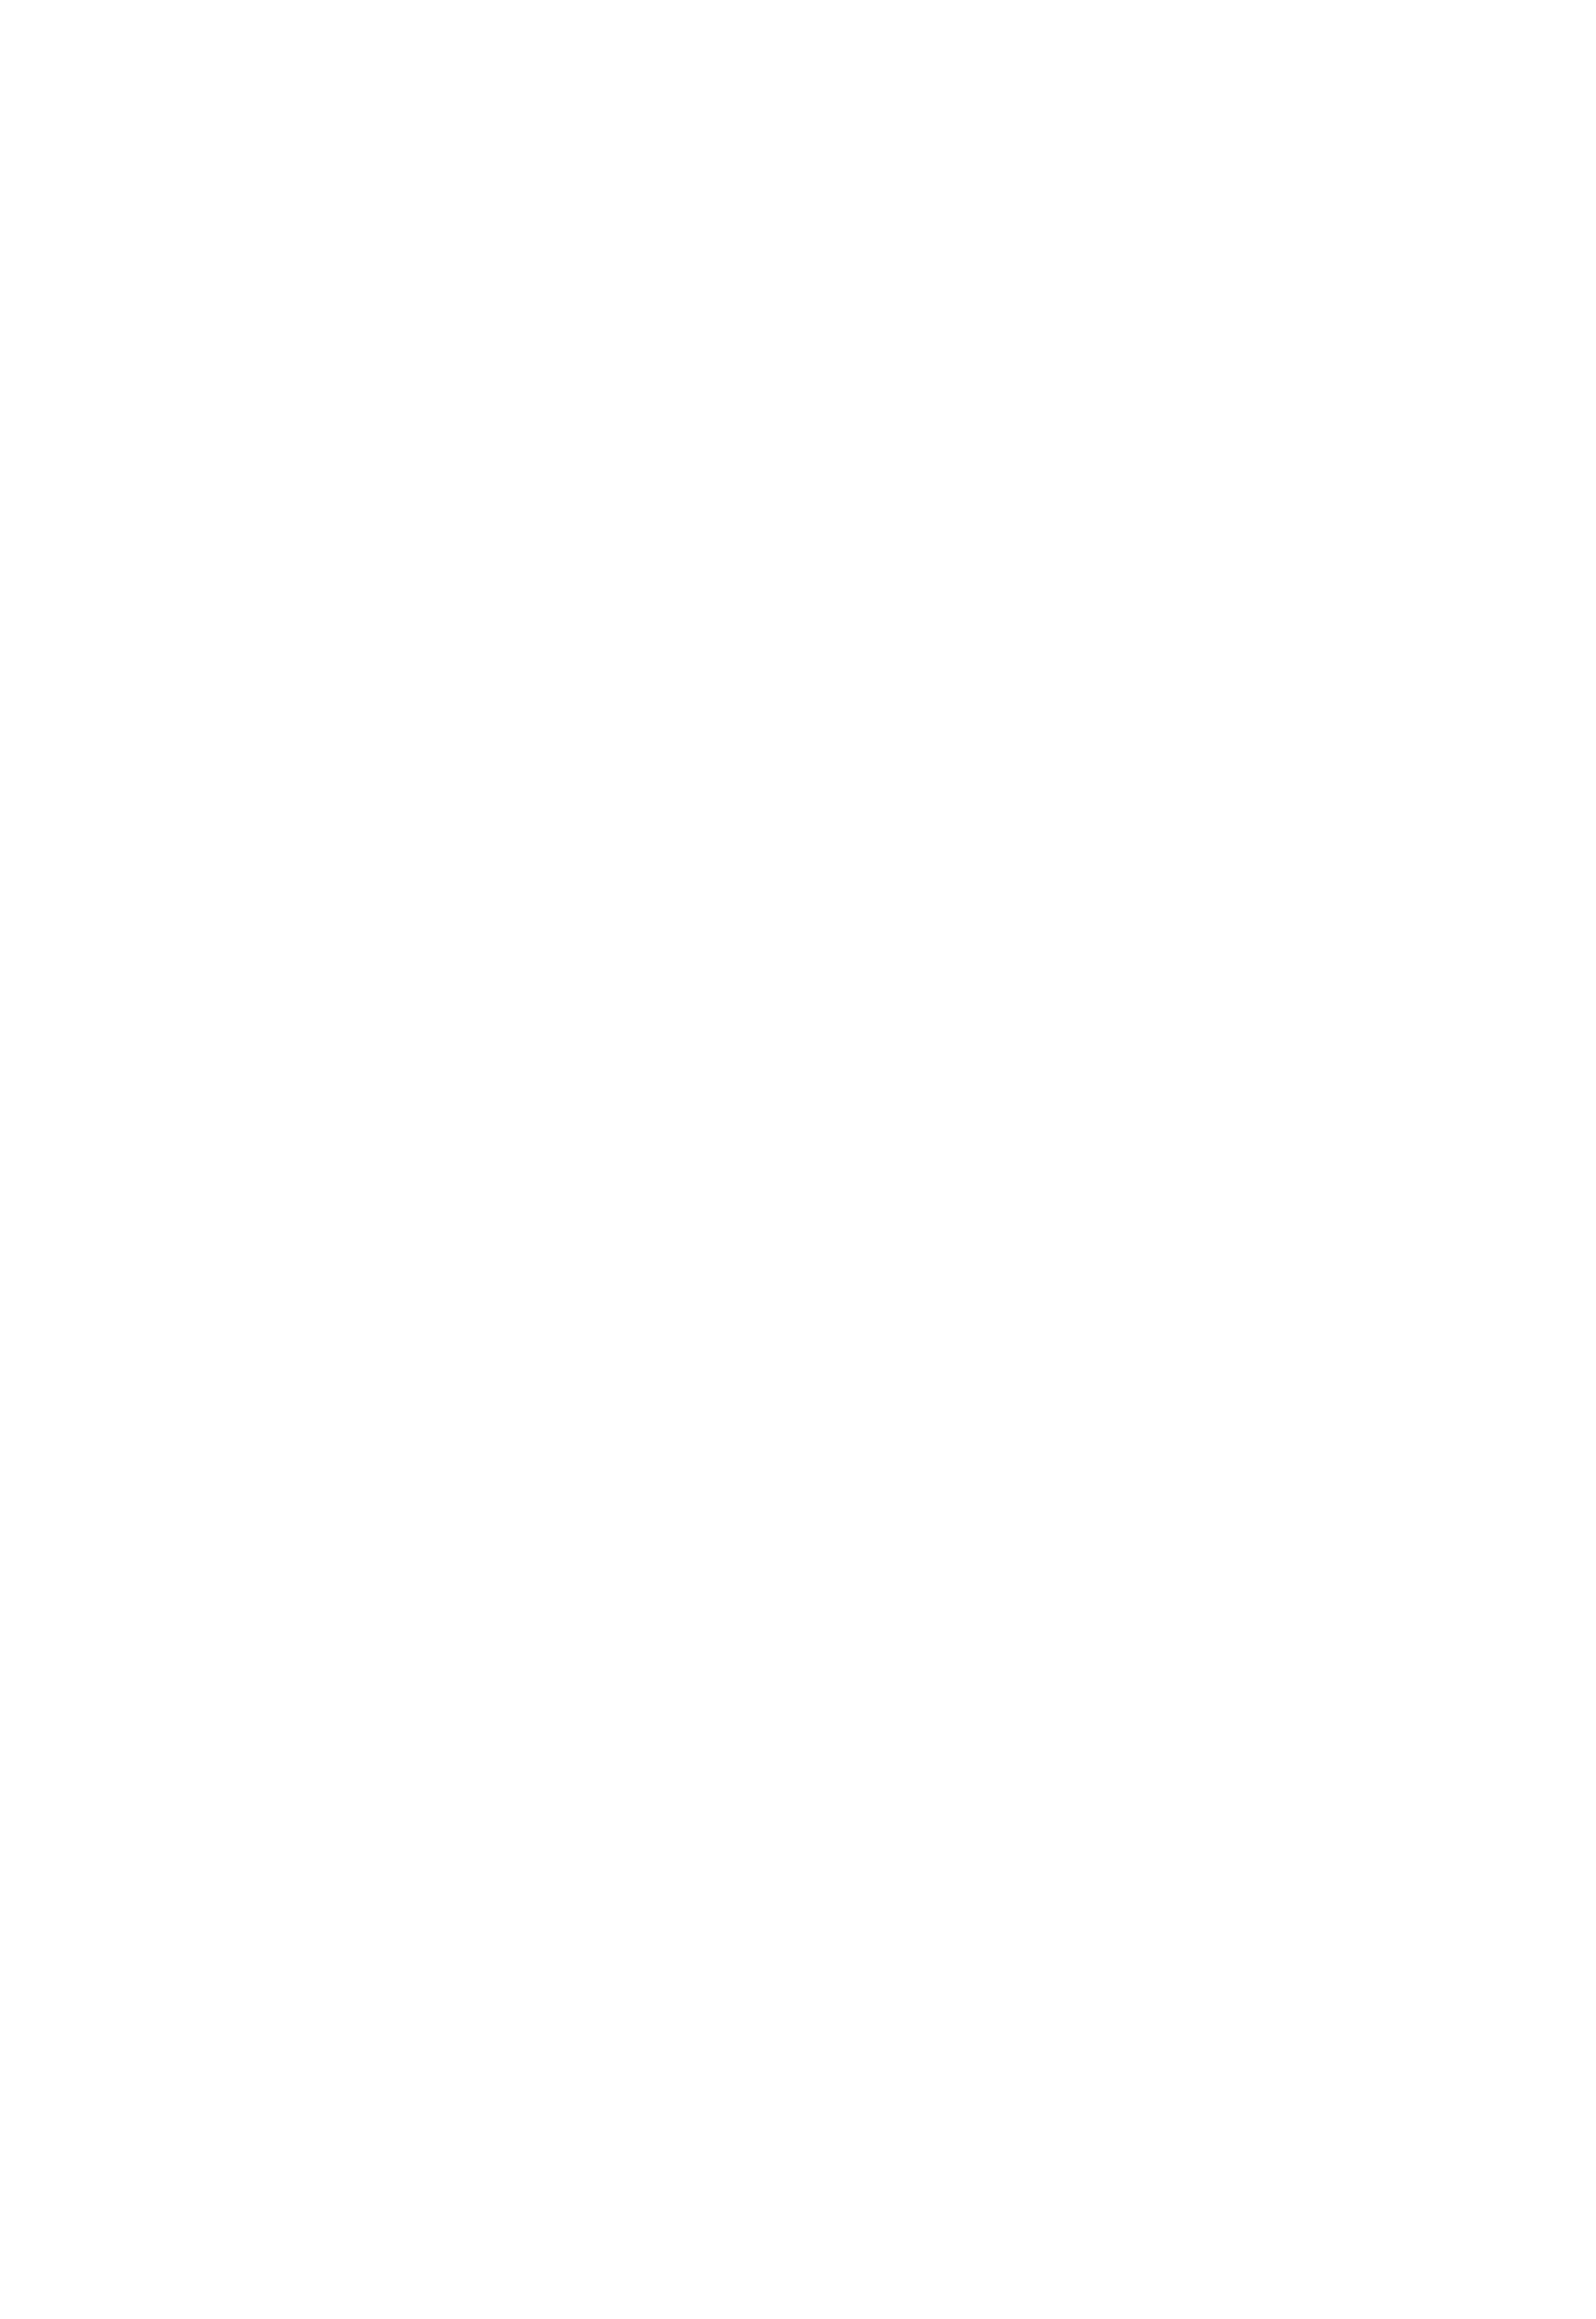 Председатель крестьянского комитета поздравляет крестьянина деревни Соболево Белостокского уезда с получением земли, конфискованной у бывшего польского князя Любомирского, 1939 г.